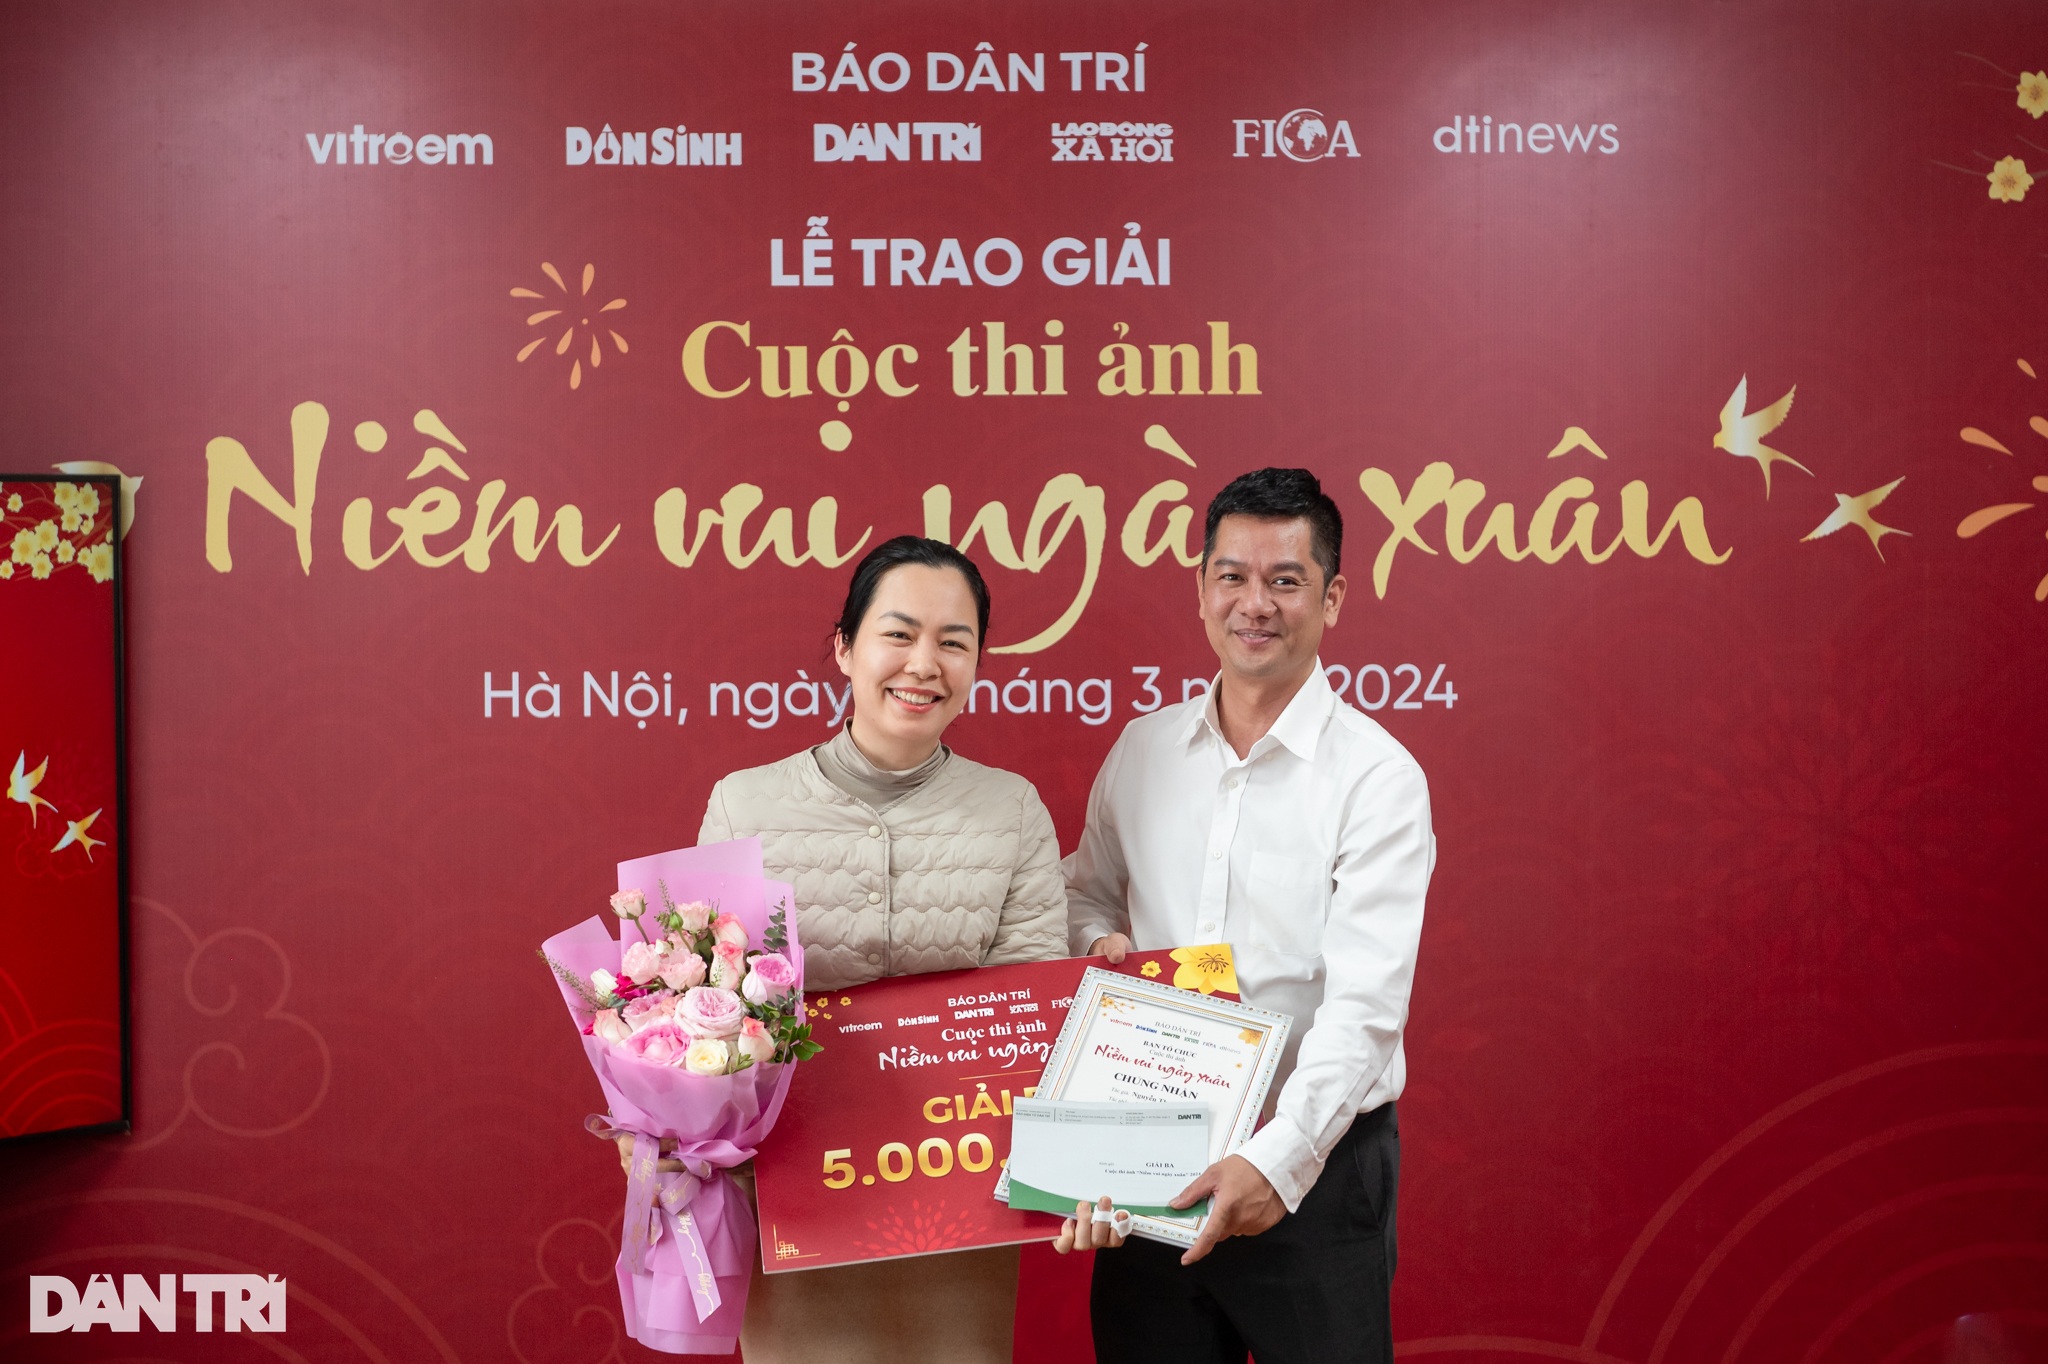 Ông Lê Đắc Thịnh Đồng, Chánh văn phòng báo Dân trí, trao giải Ba cho tác giả Nguyễn Thu Thủy (Ảnh: Thành Đông).